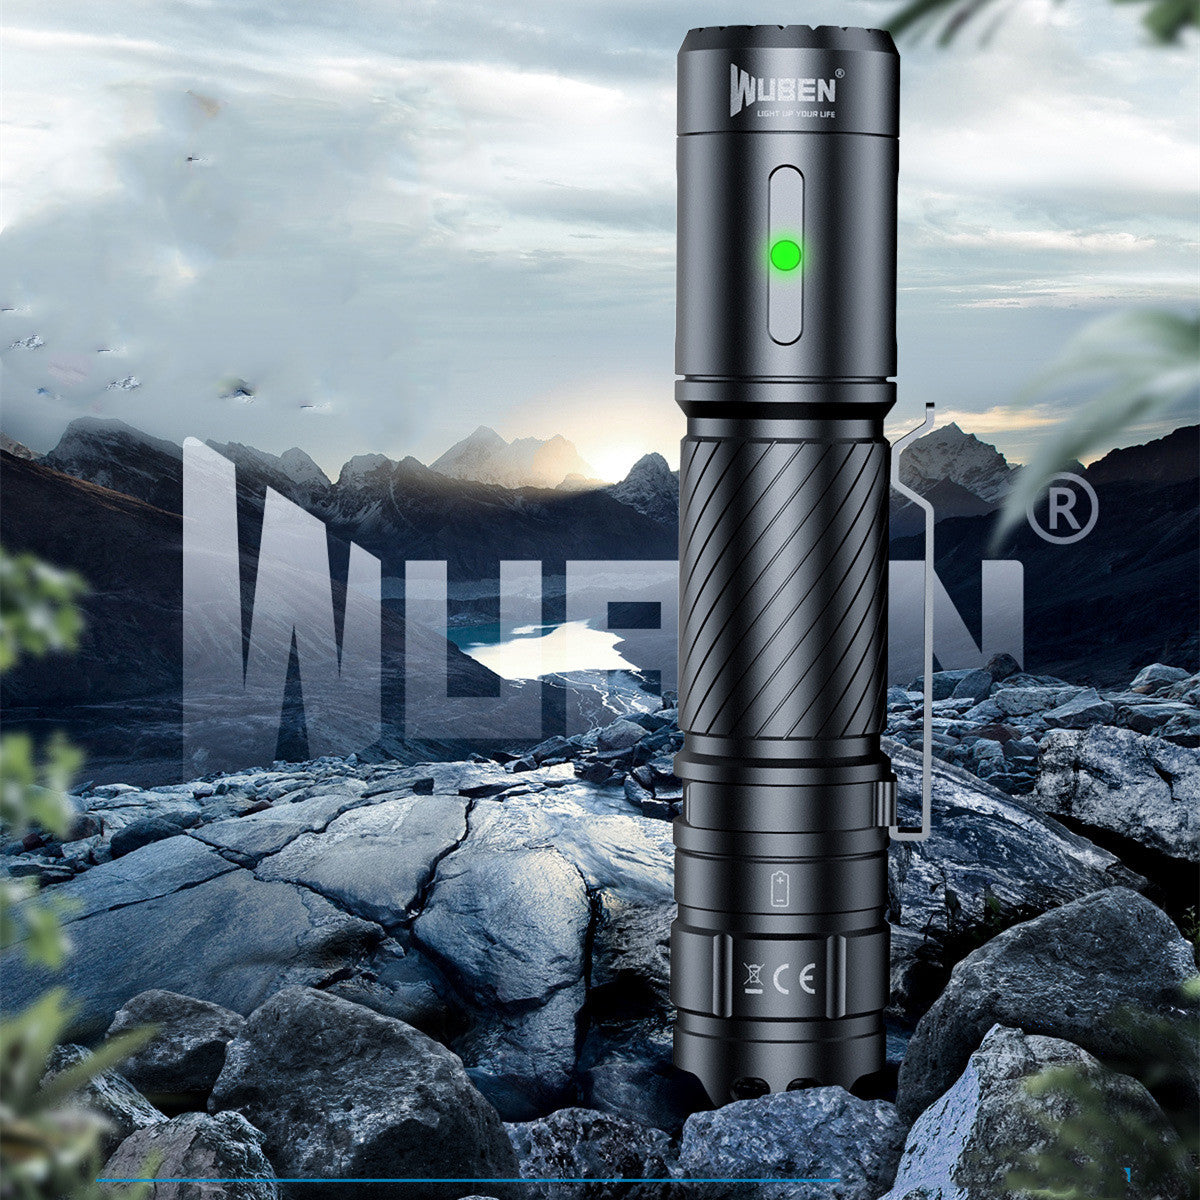 Wuben C3 LED 1200 Lumen Flashlight – 8FOLD EDC